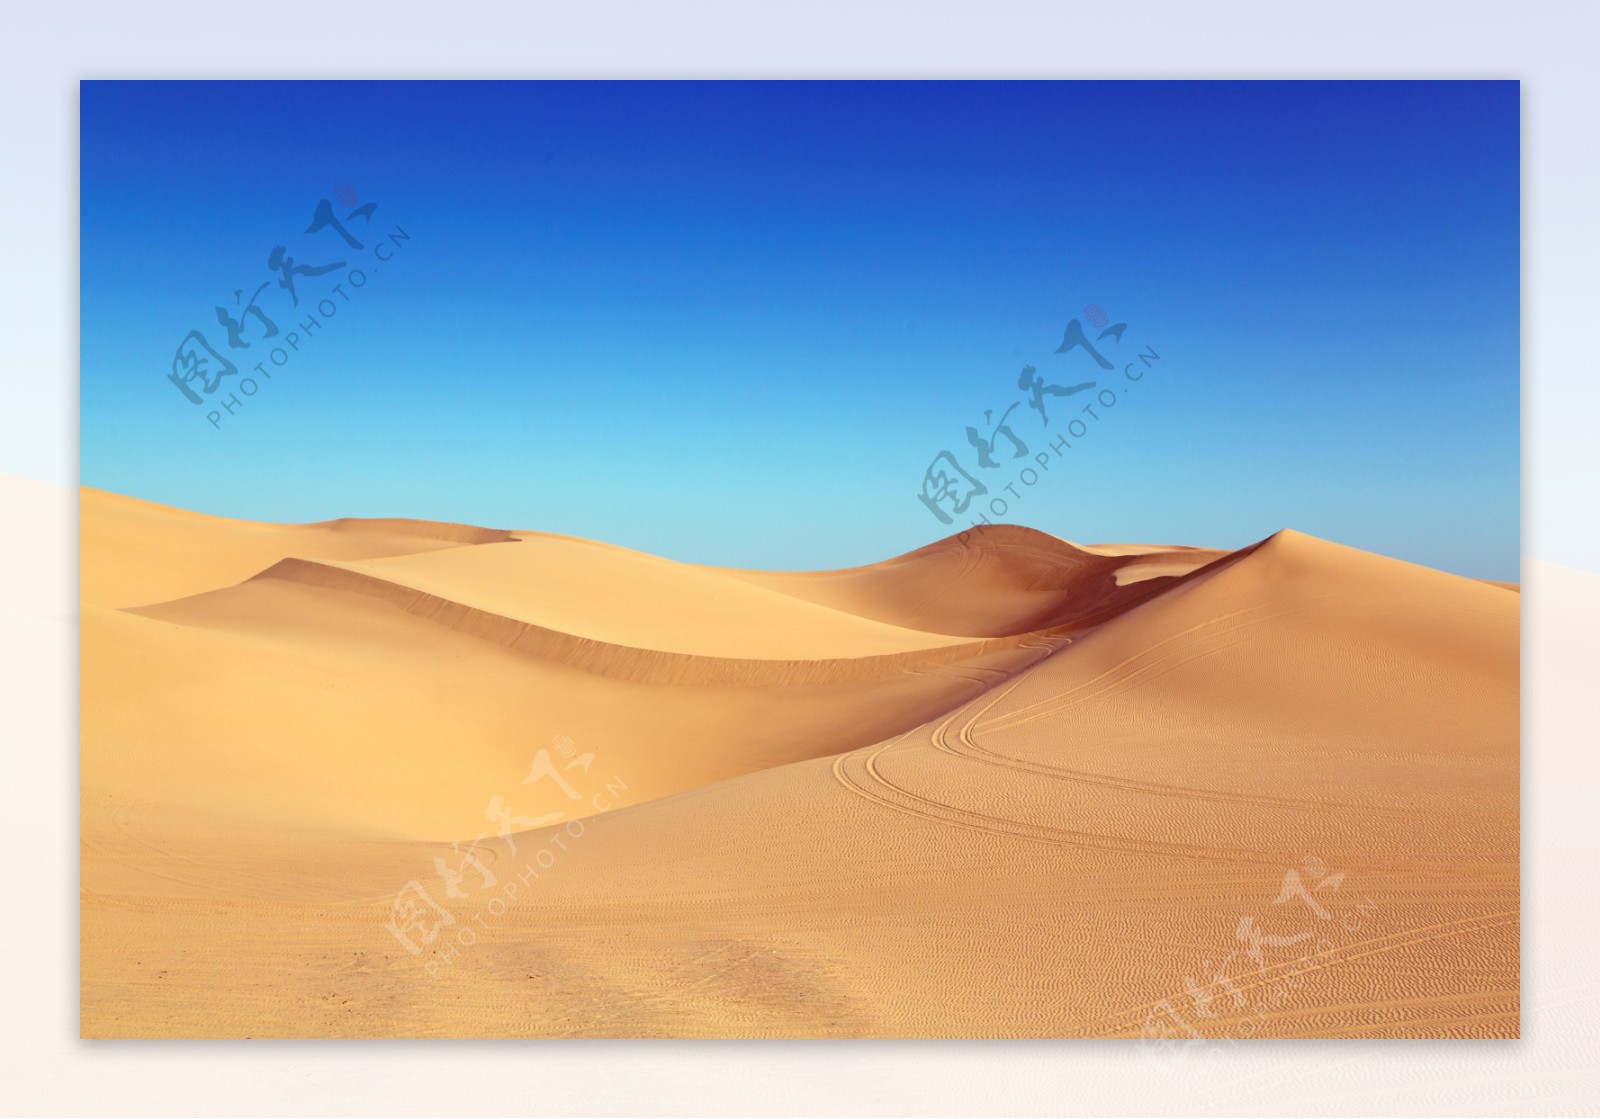 沙漠沙丘蓝天